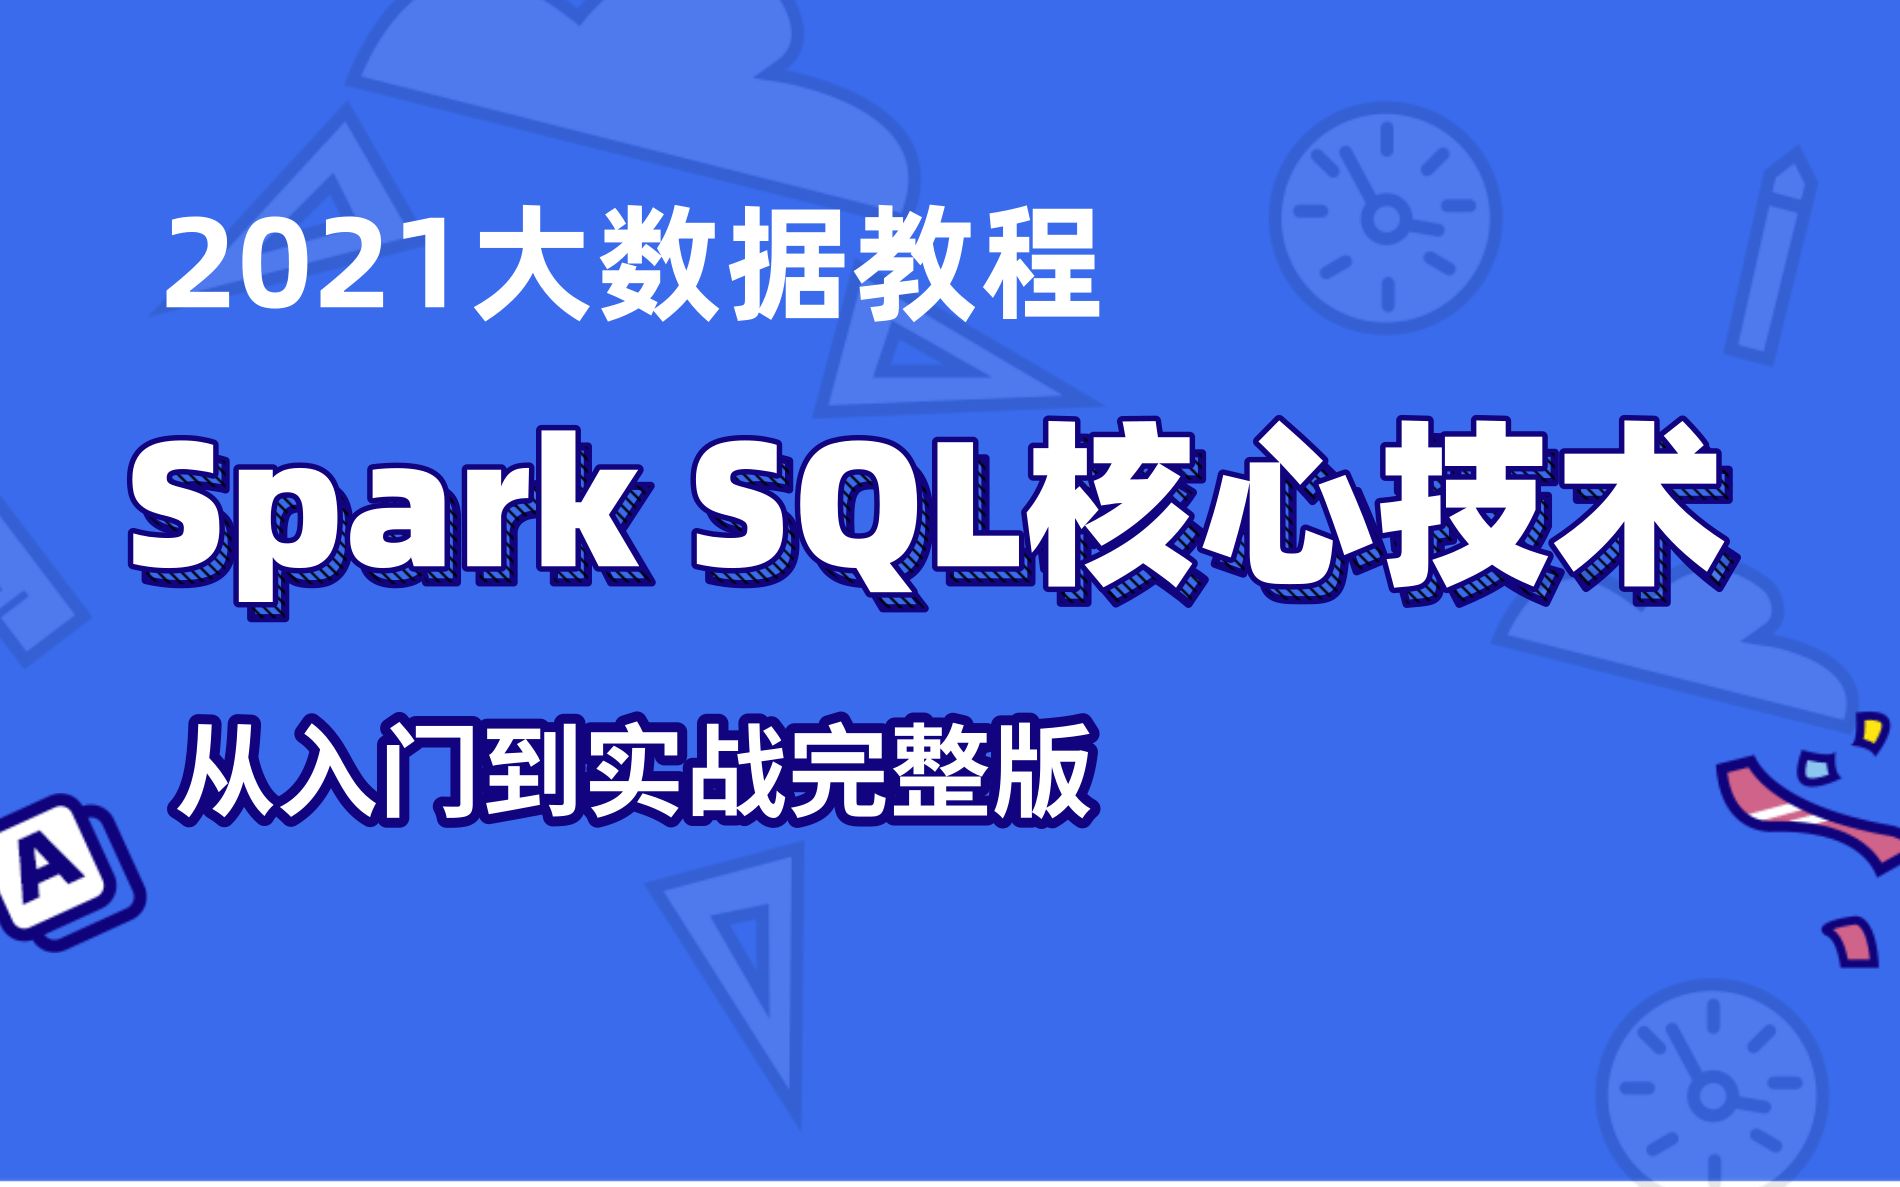 【2021大数据】Spark学习,Spark SQL核心技术-从入门到实战完整版